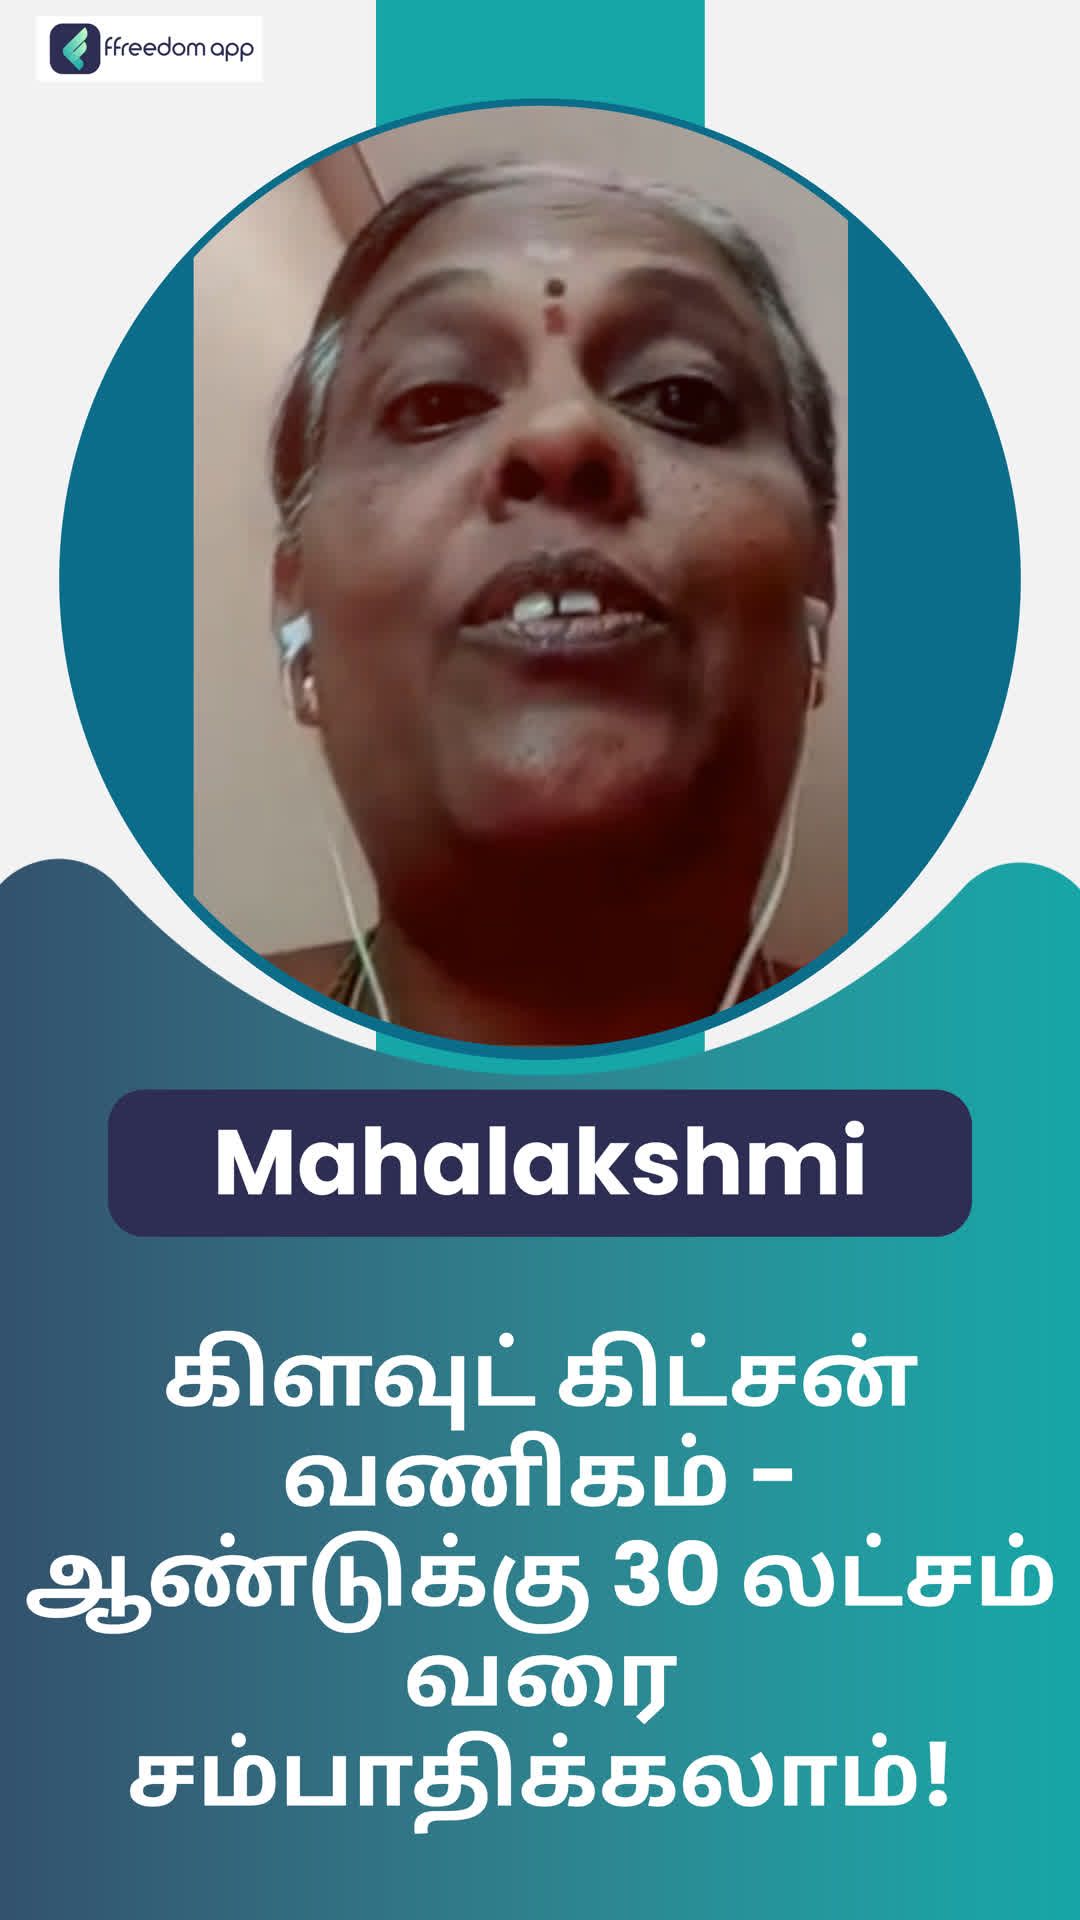 Mahalakshmi's Honest Review of ffreedom app - Krishnagiri ,Karnataka